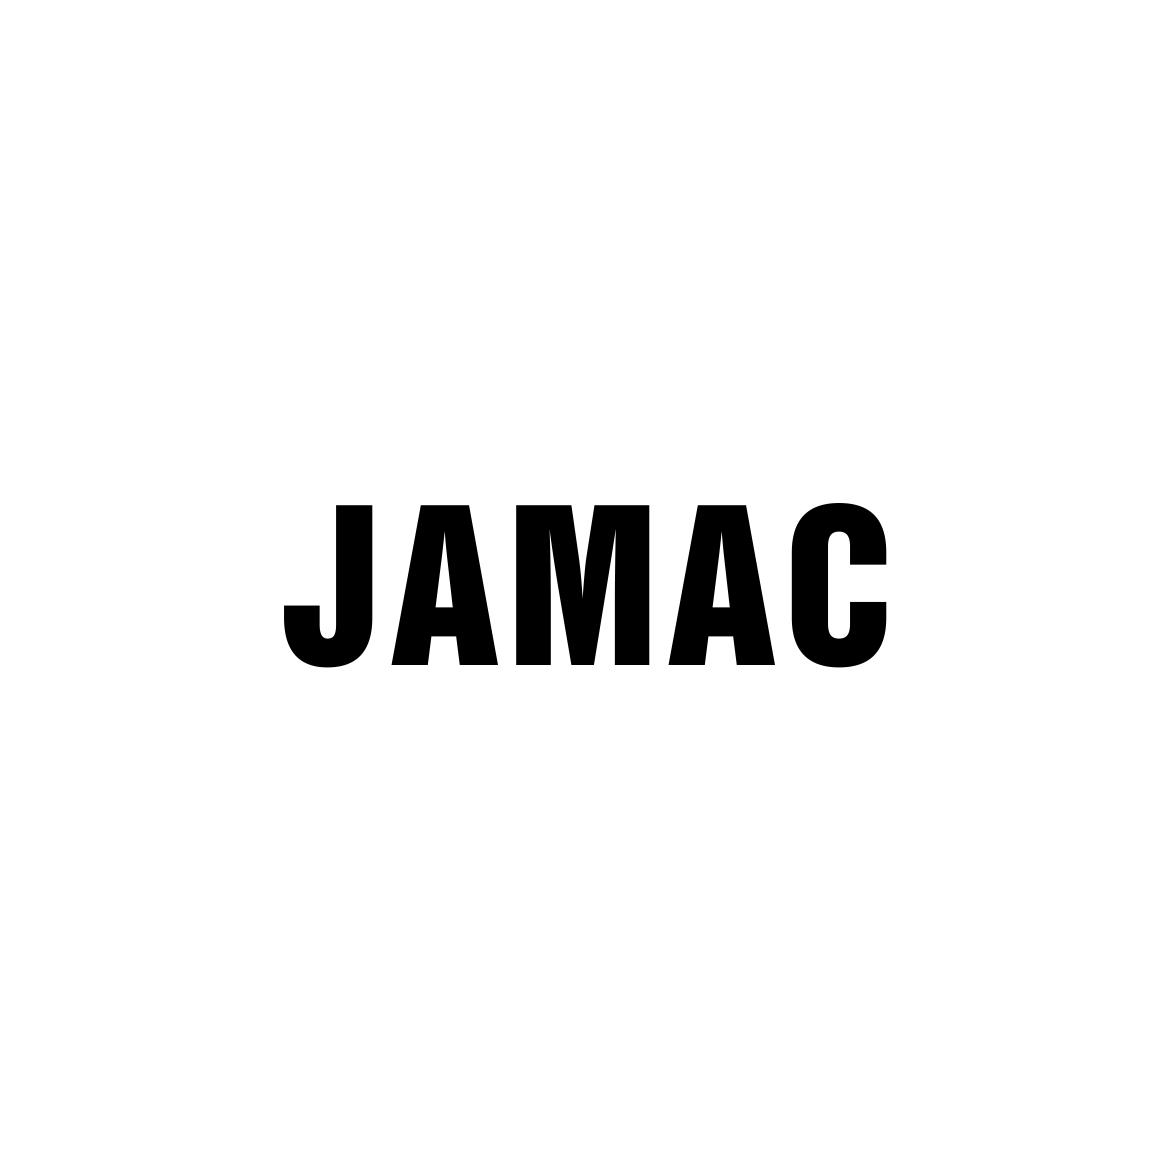 JAMAC